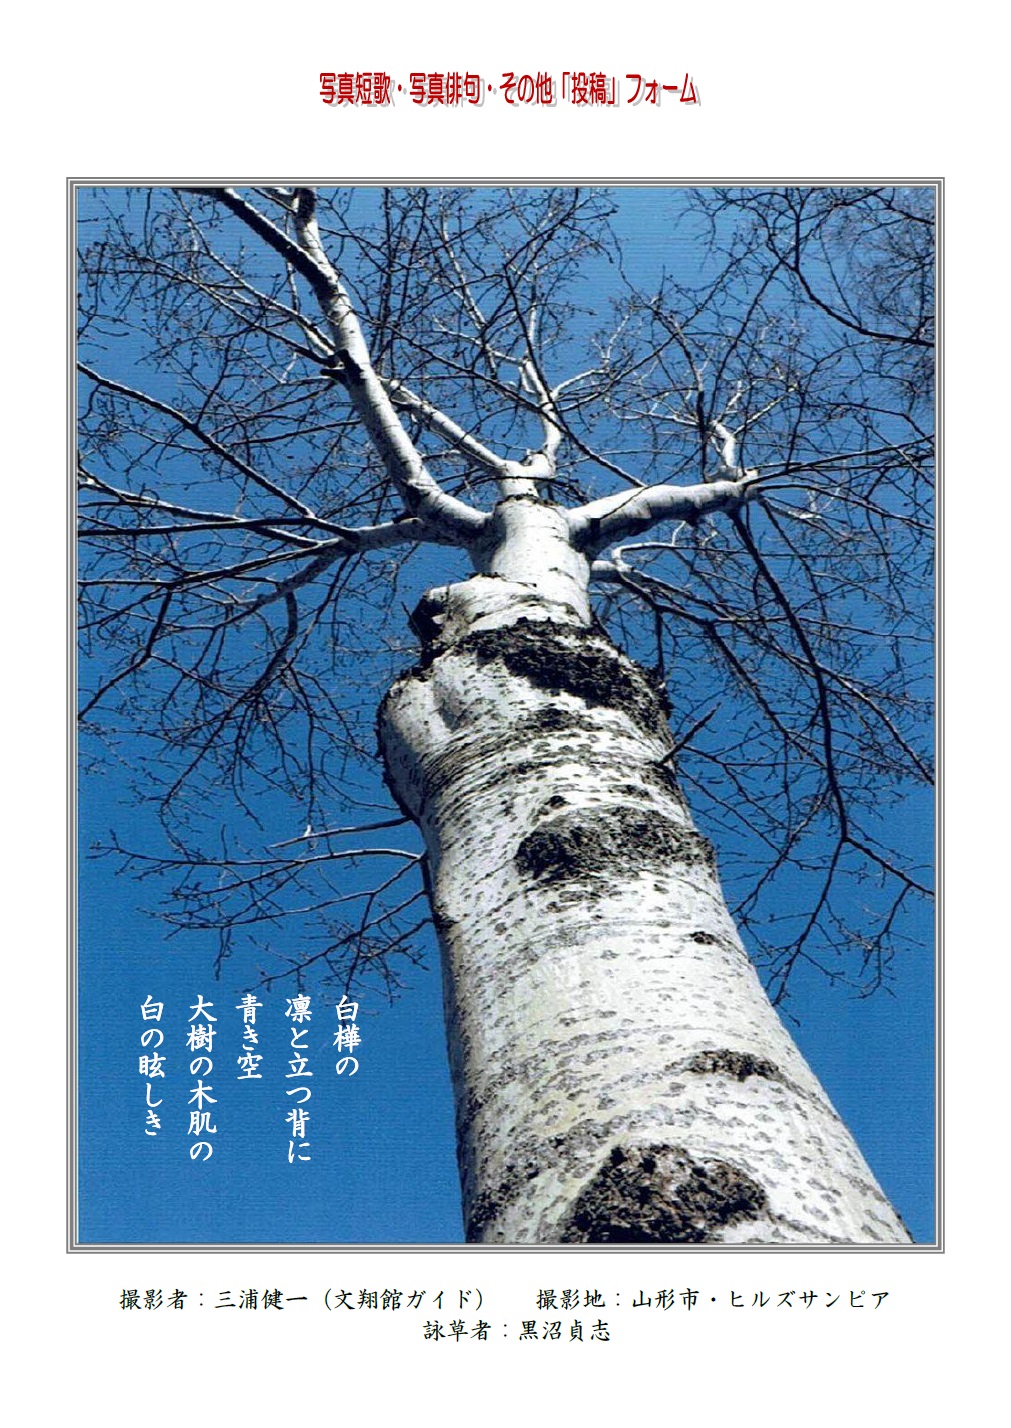 作品番号-１９（共同制作写真短歌）：白樺の凛と立つ背に青き空大樹の木肌の白の眩しき